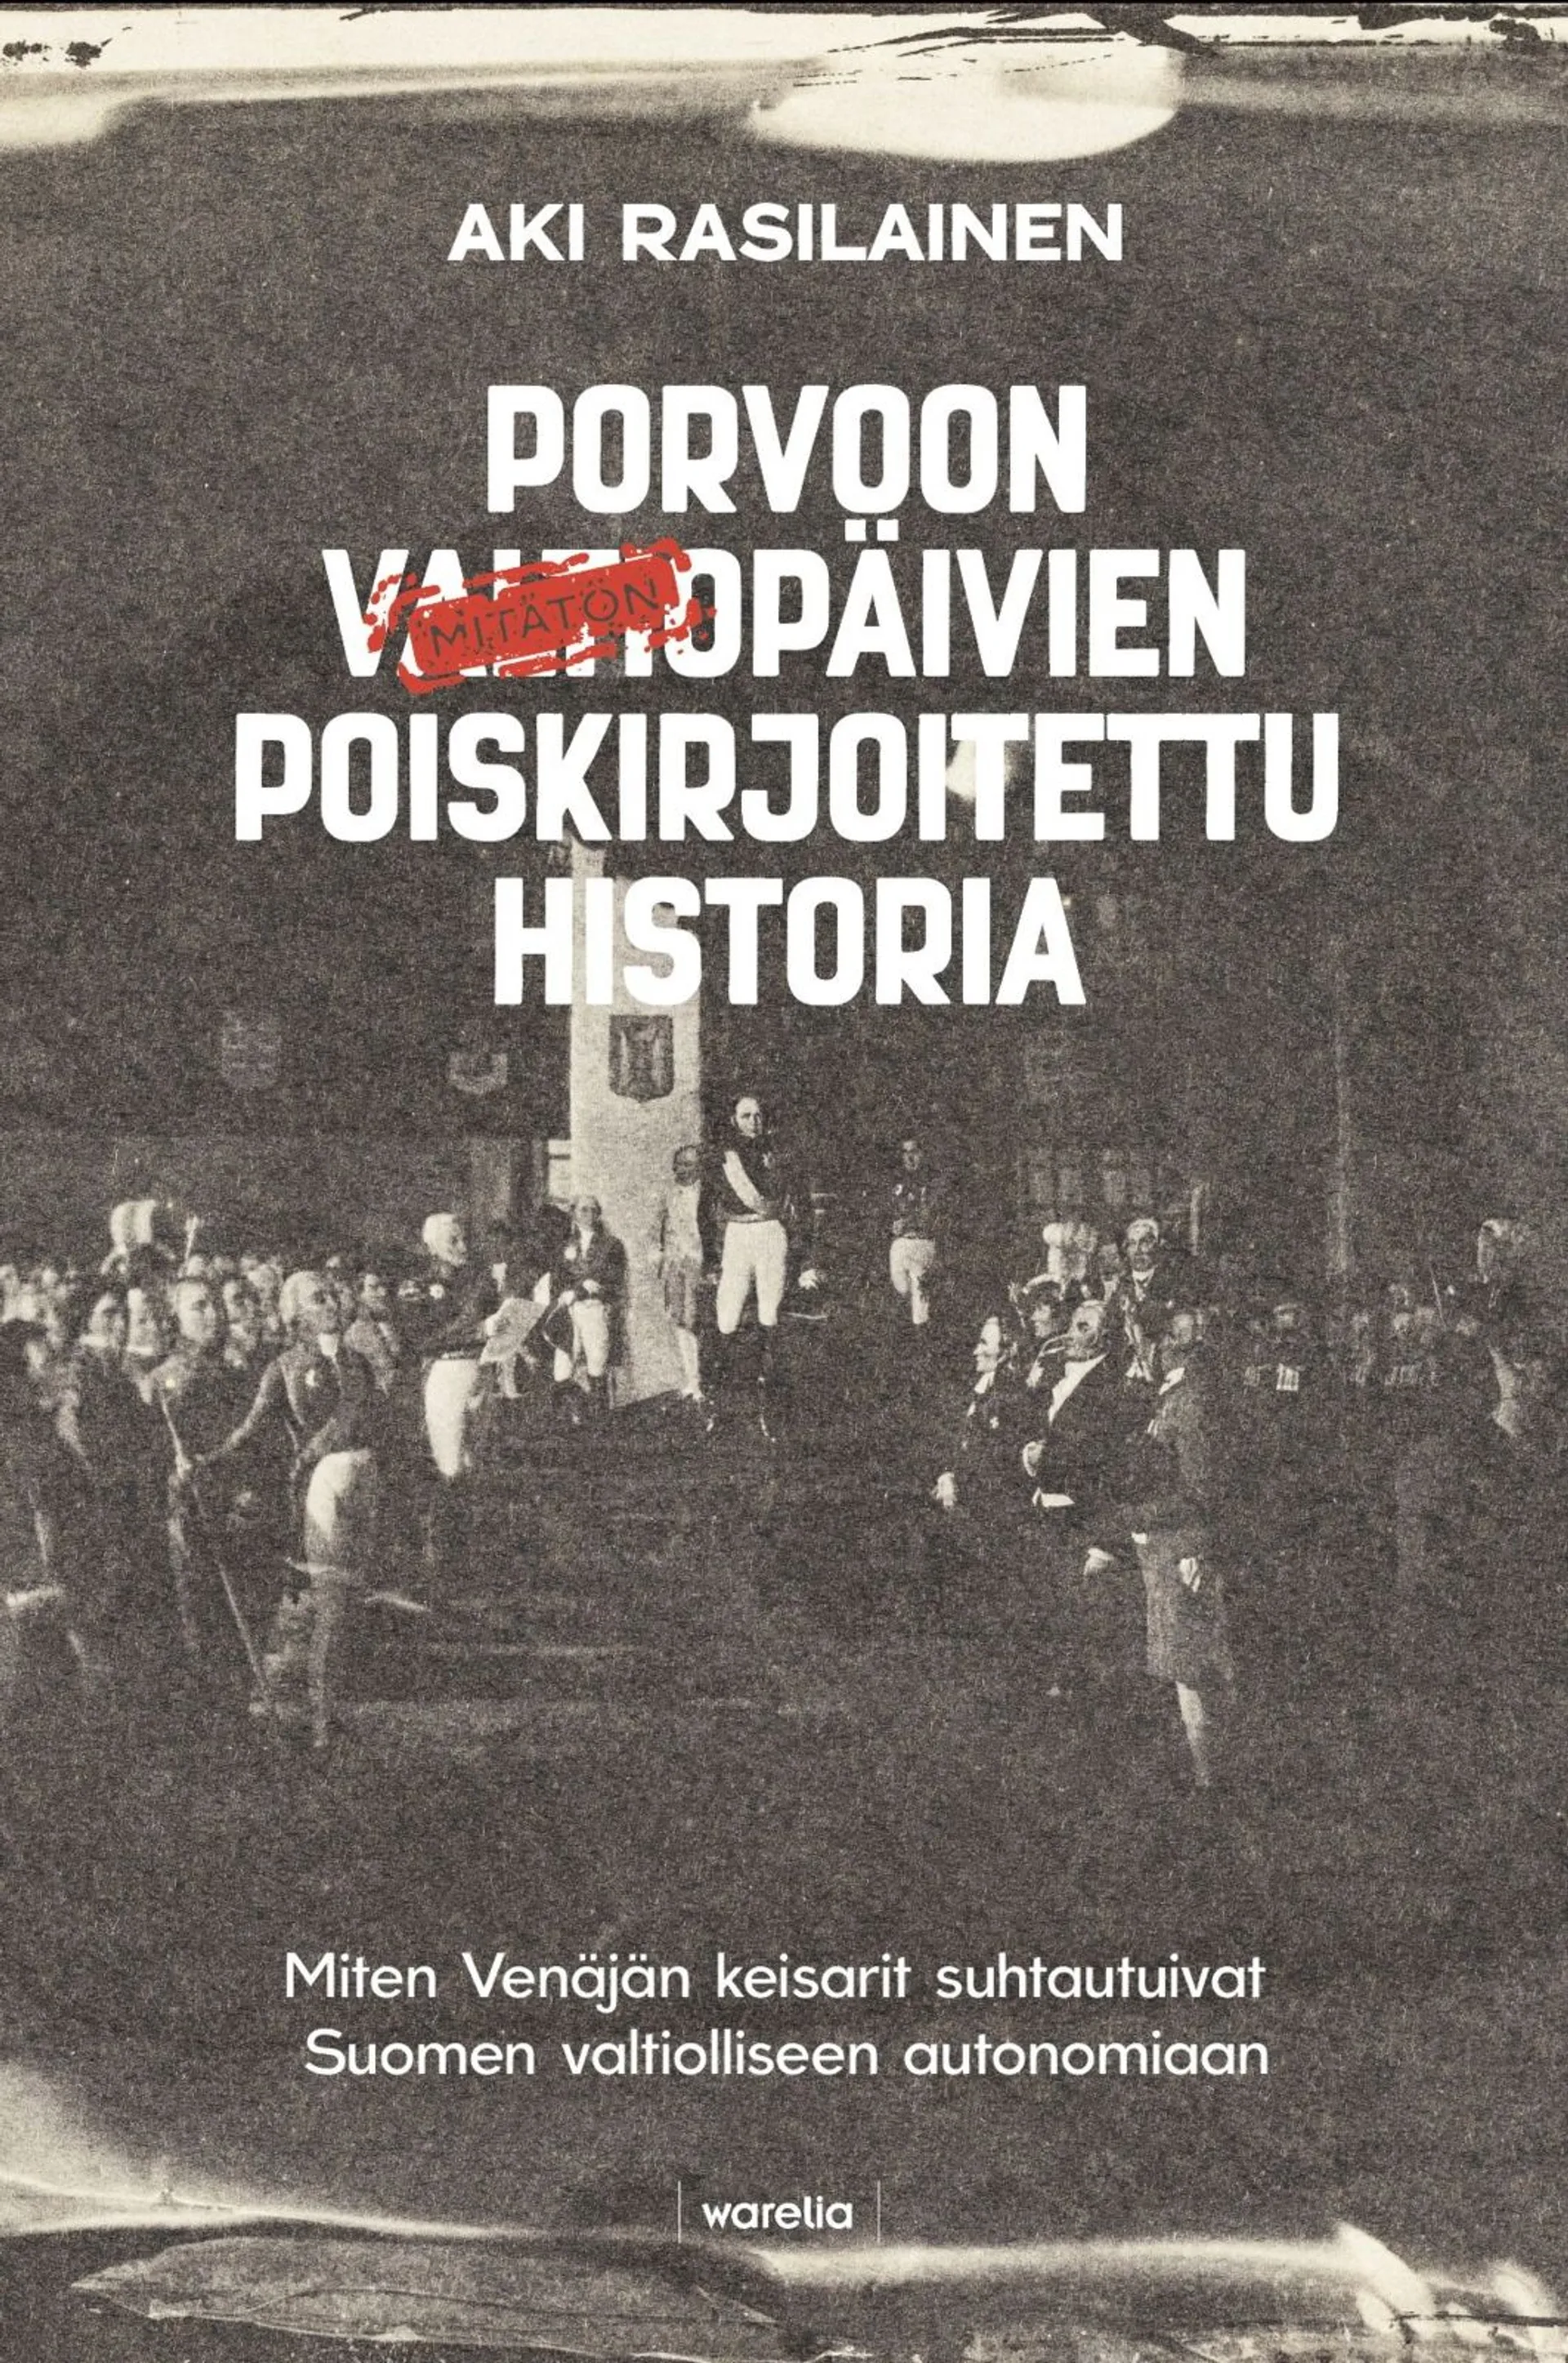 Rasilainen, Porvoon valtiopäivien poiskirjoitettu historia - Miten Venäjän keisarit suhtautuivat Suomen valtiolliseen autonomiaan